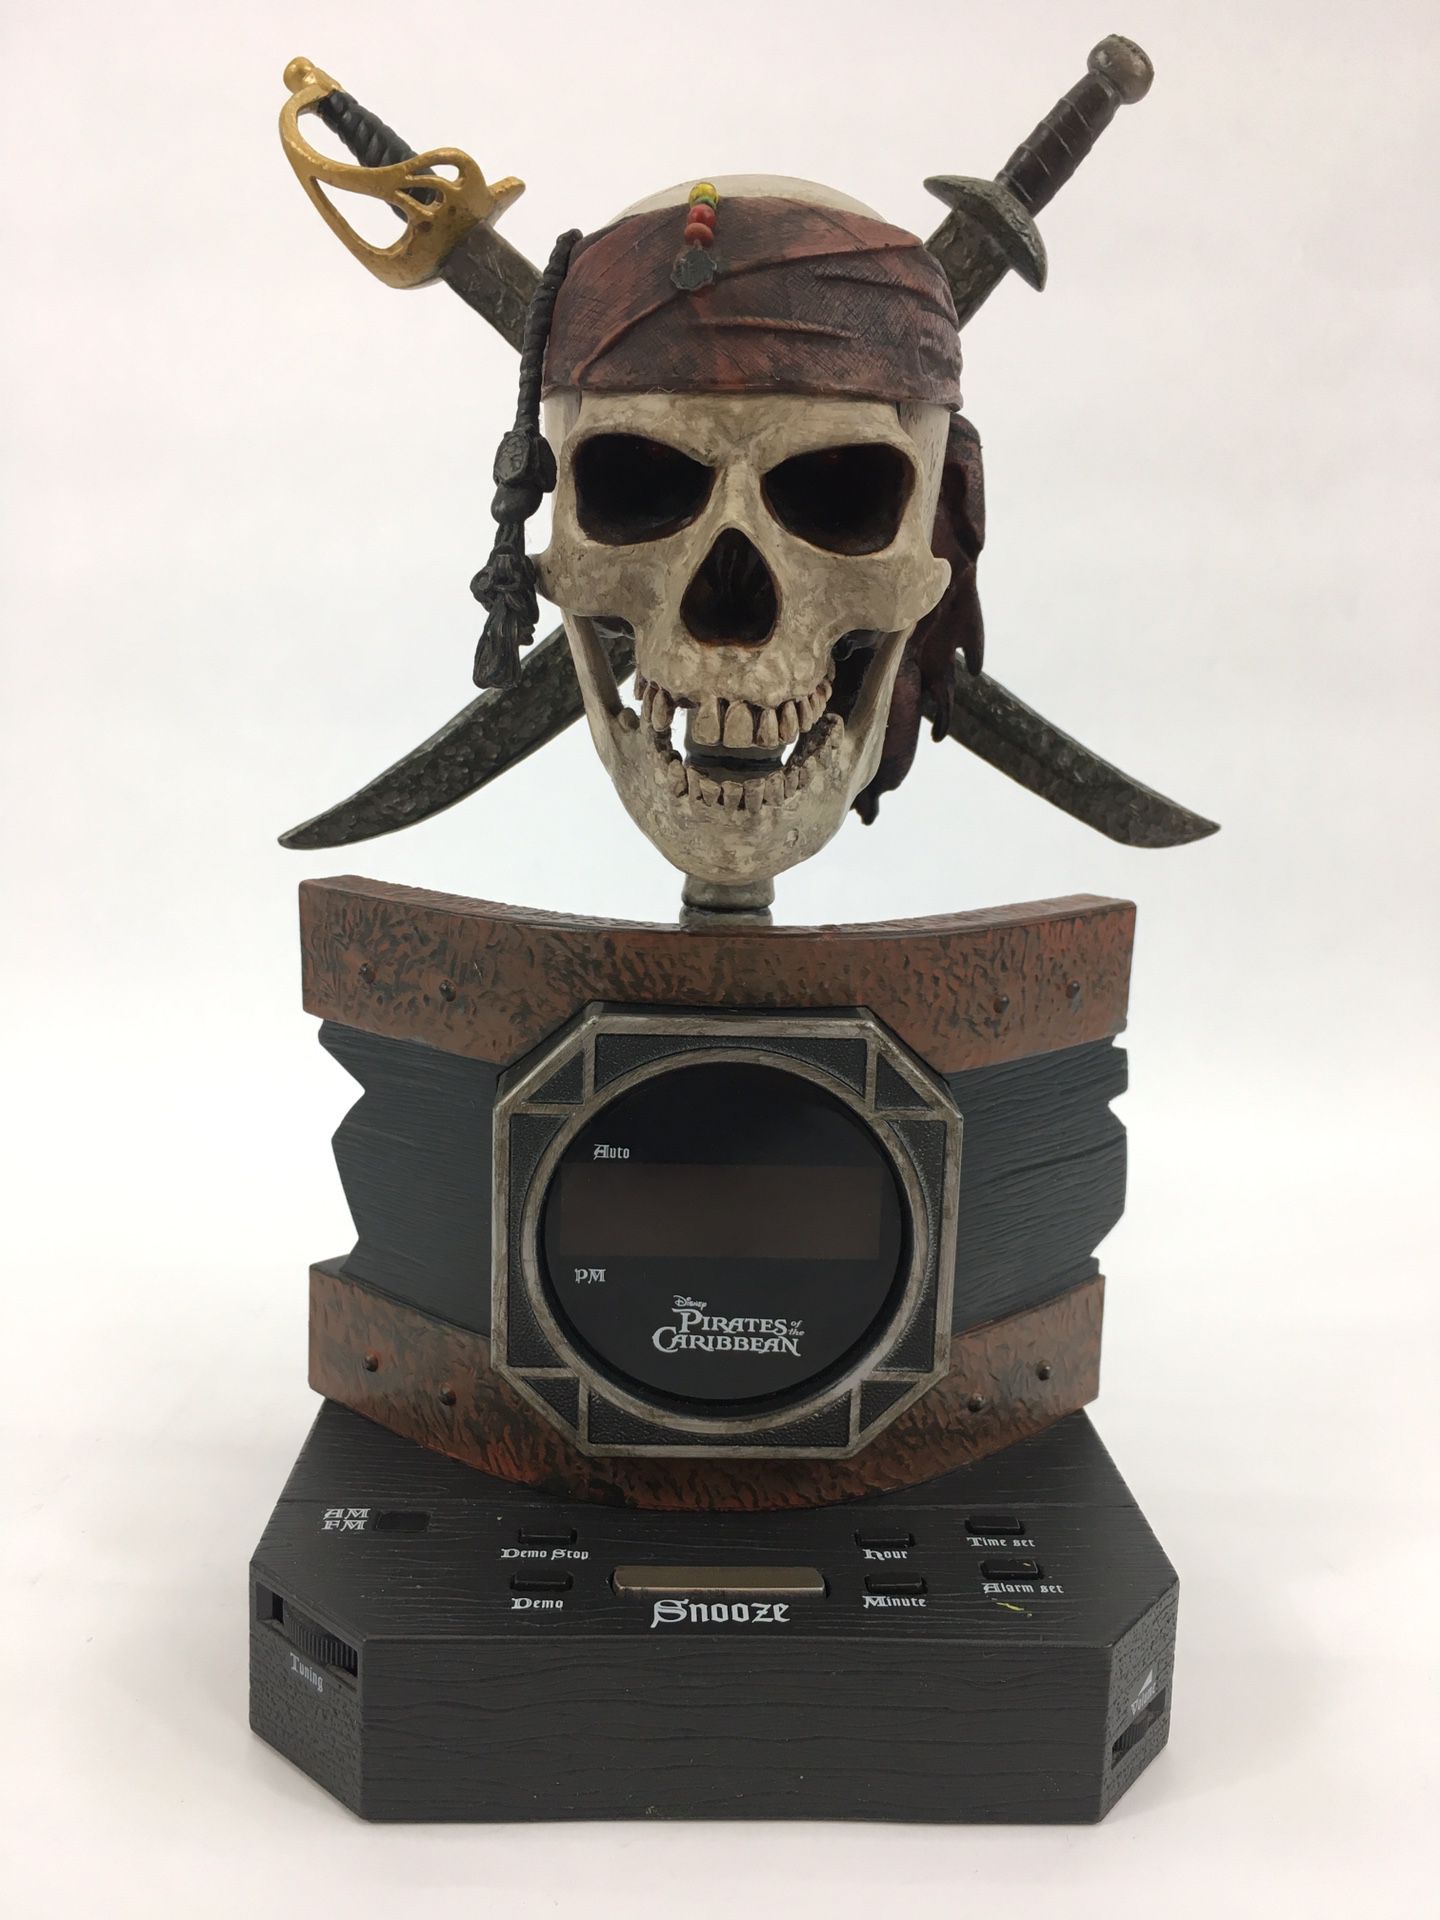 10” Disney Original Pirates of The Carribean Animated Alarm Clock Radio